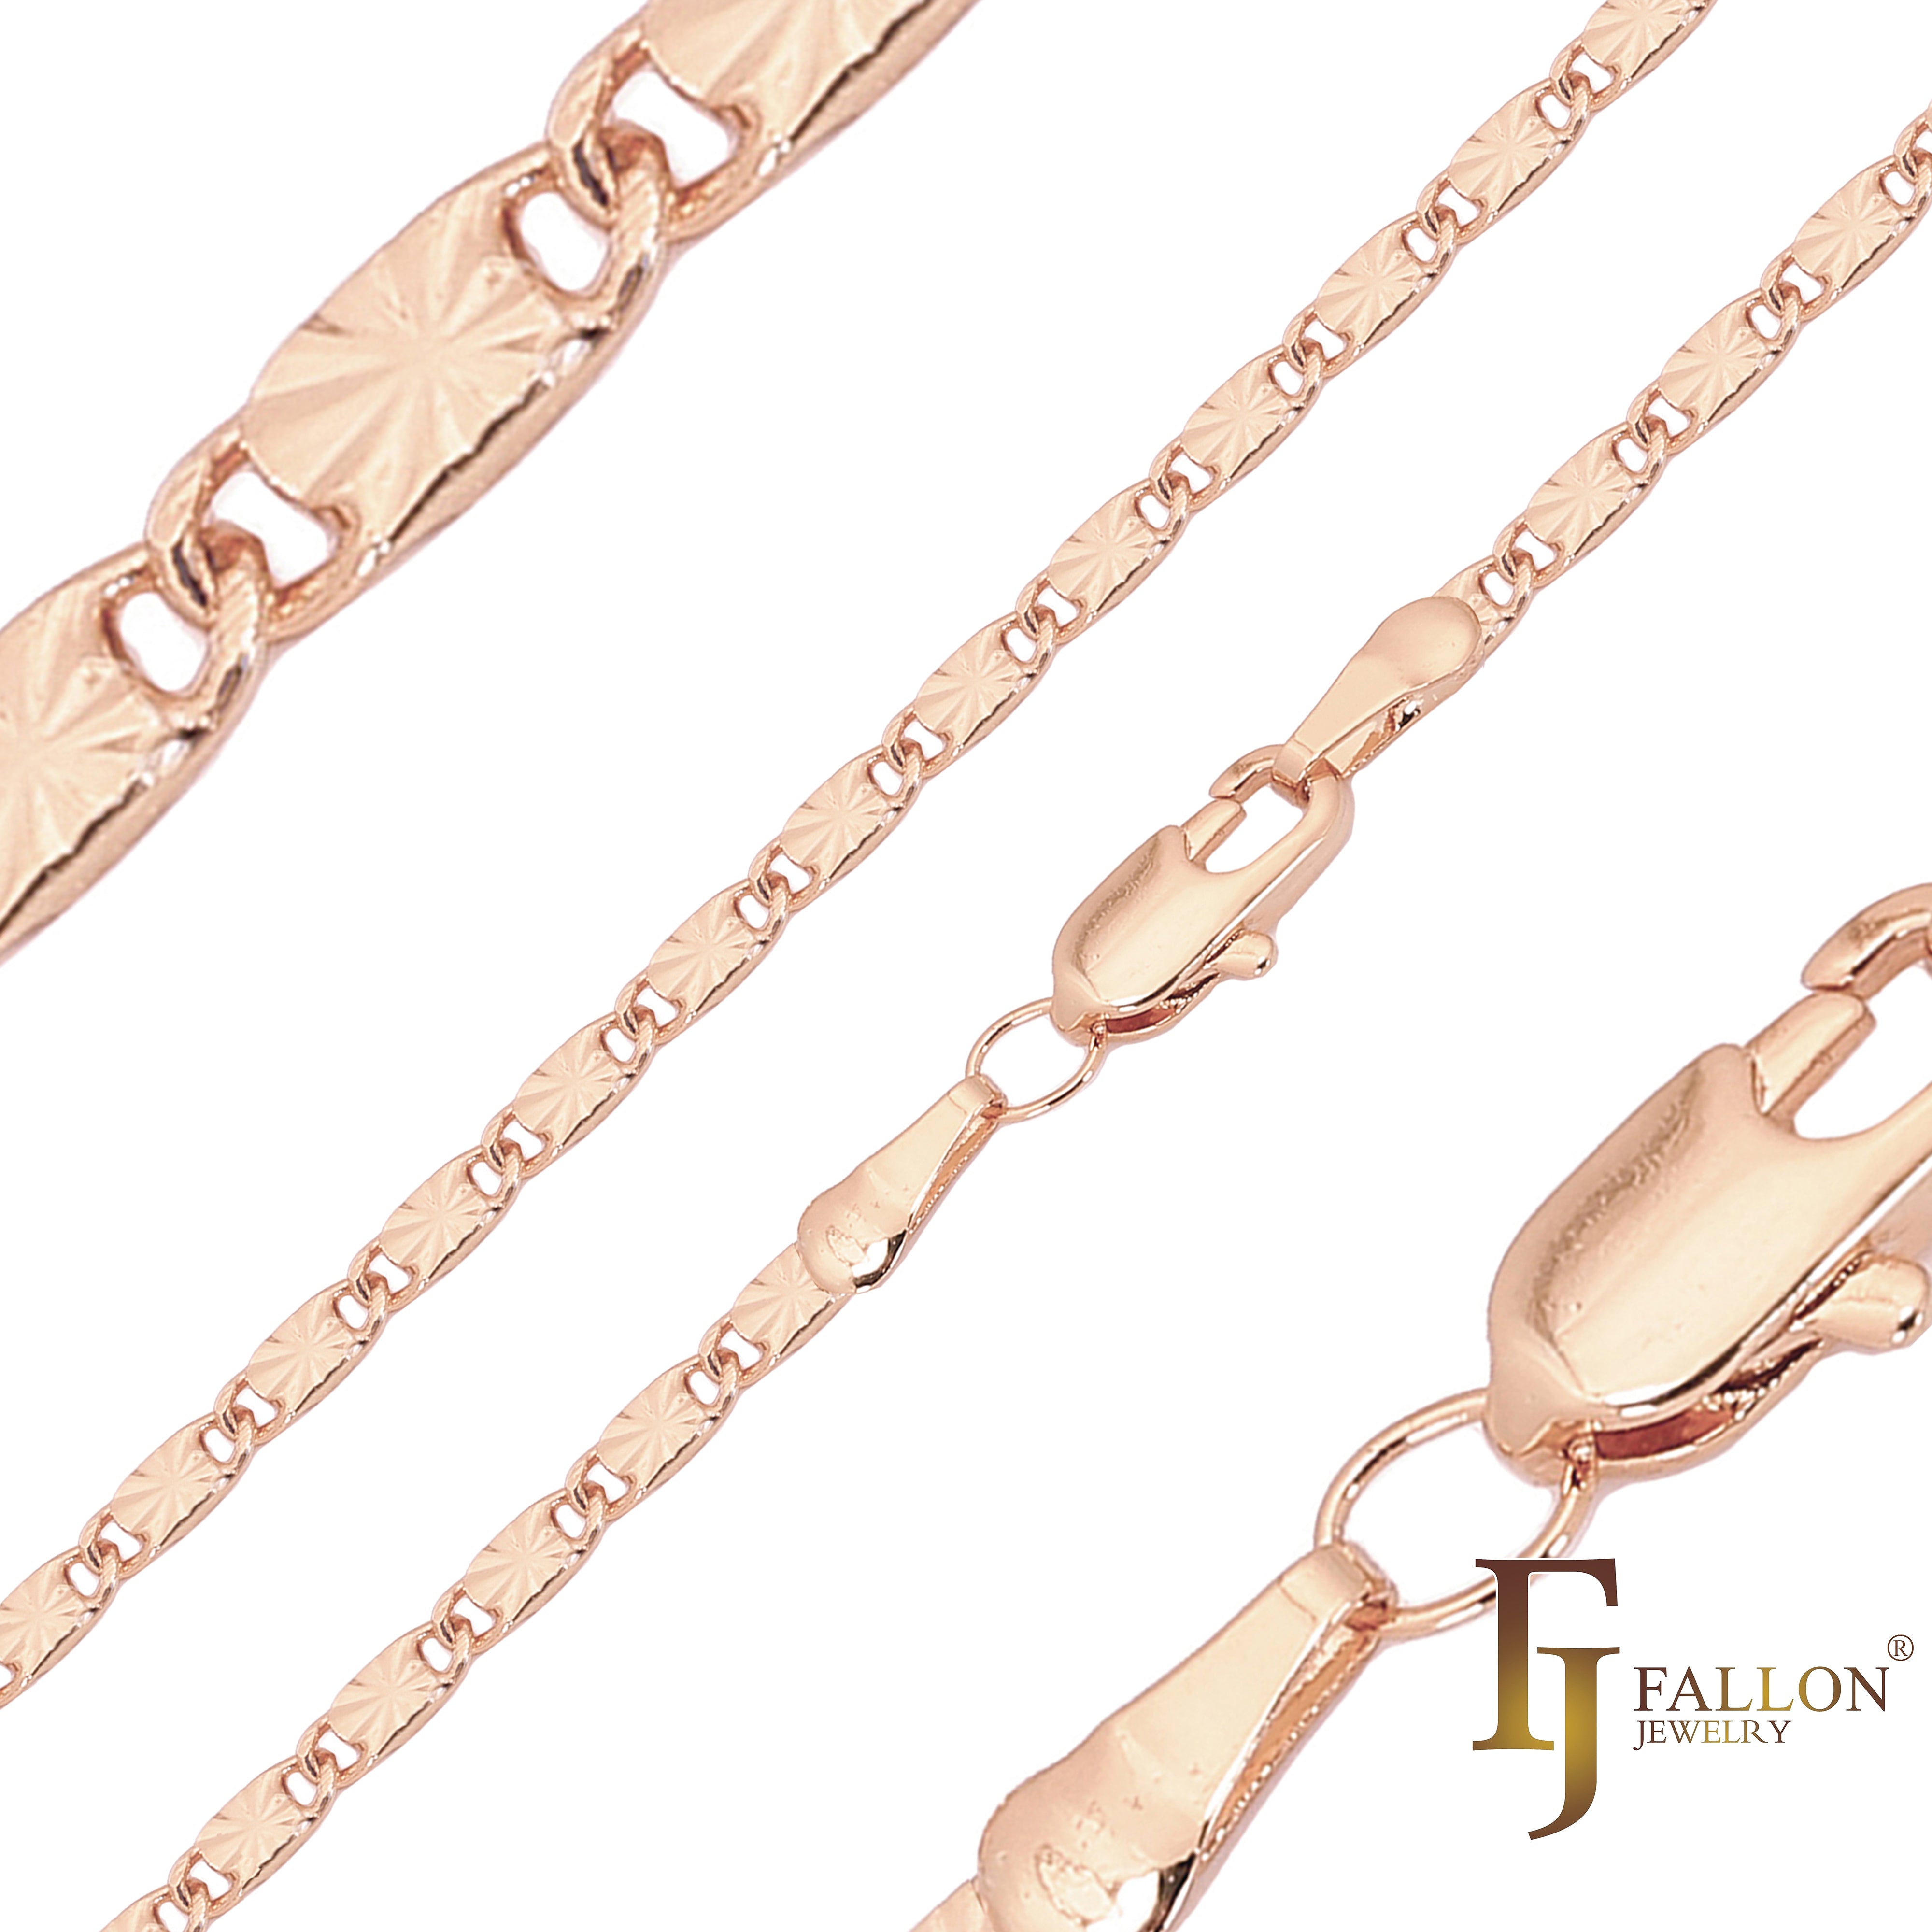 .Классические цельнолитые кованые цепи в форме улитки с солнечными лучами, покрытые белым золотом, 14-каратным золотом, розовым золотом, двухцветные